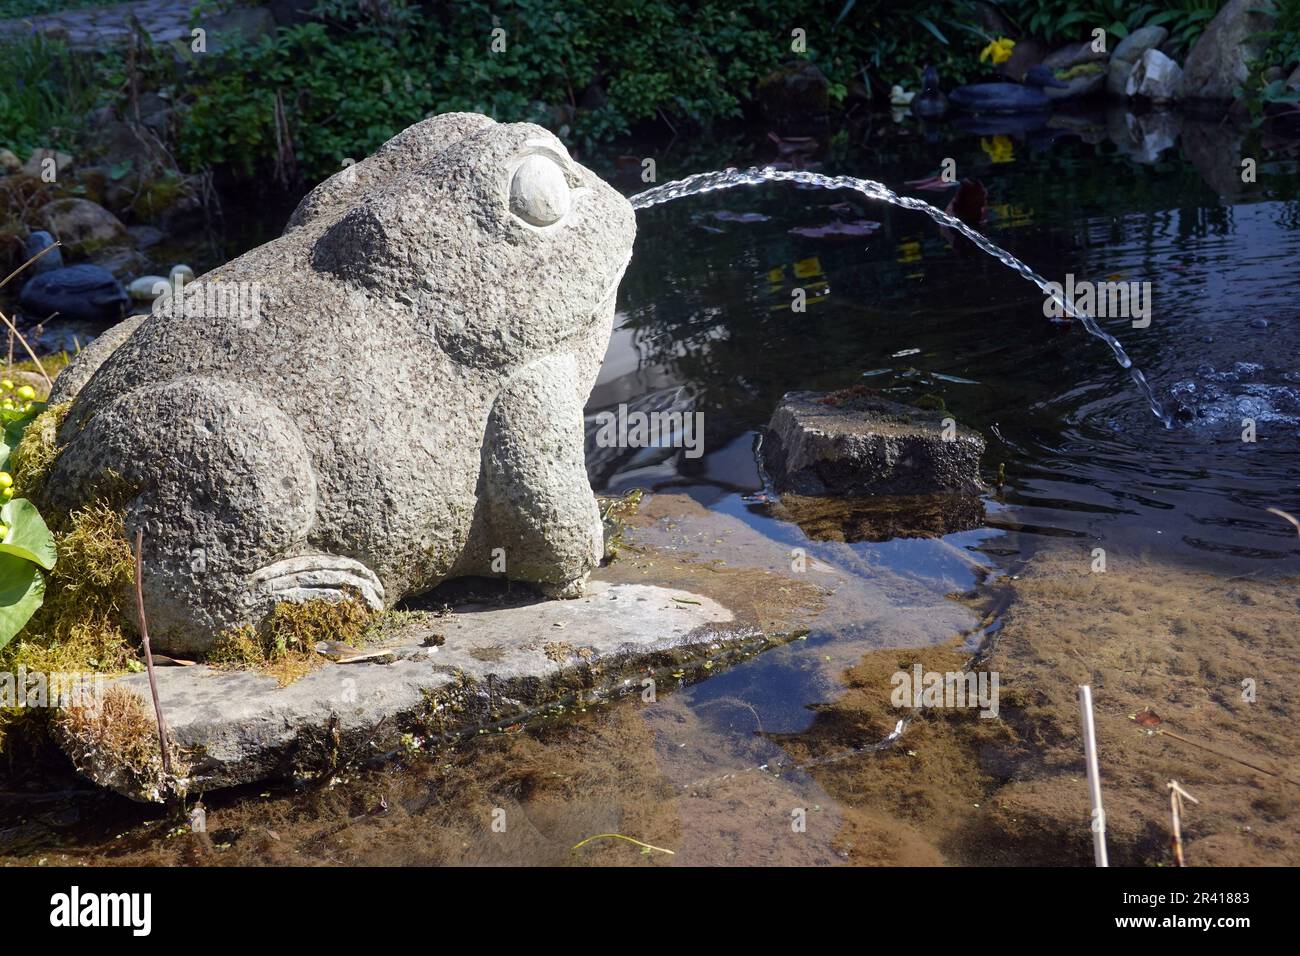 L'eau craque la grenouille de la pierre à l'étang du jardin Banque D'Images